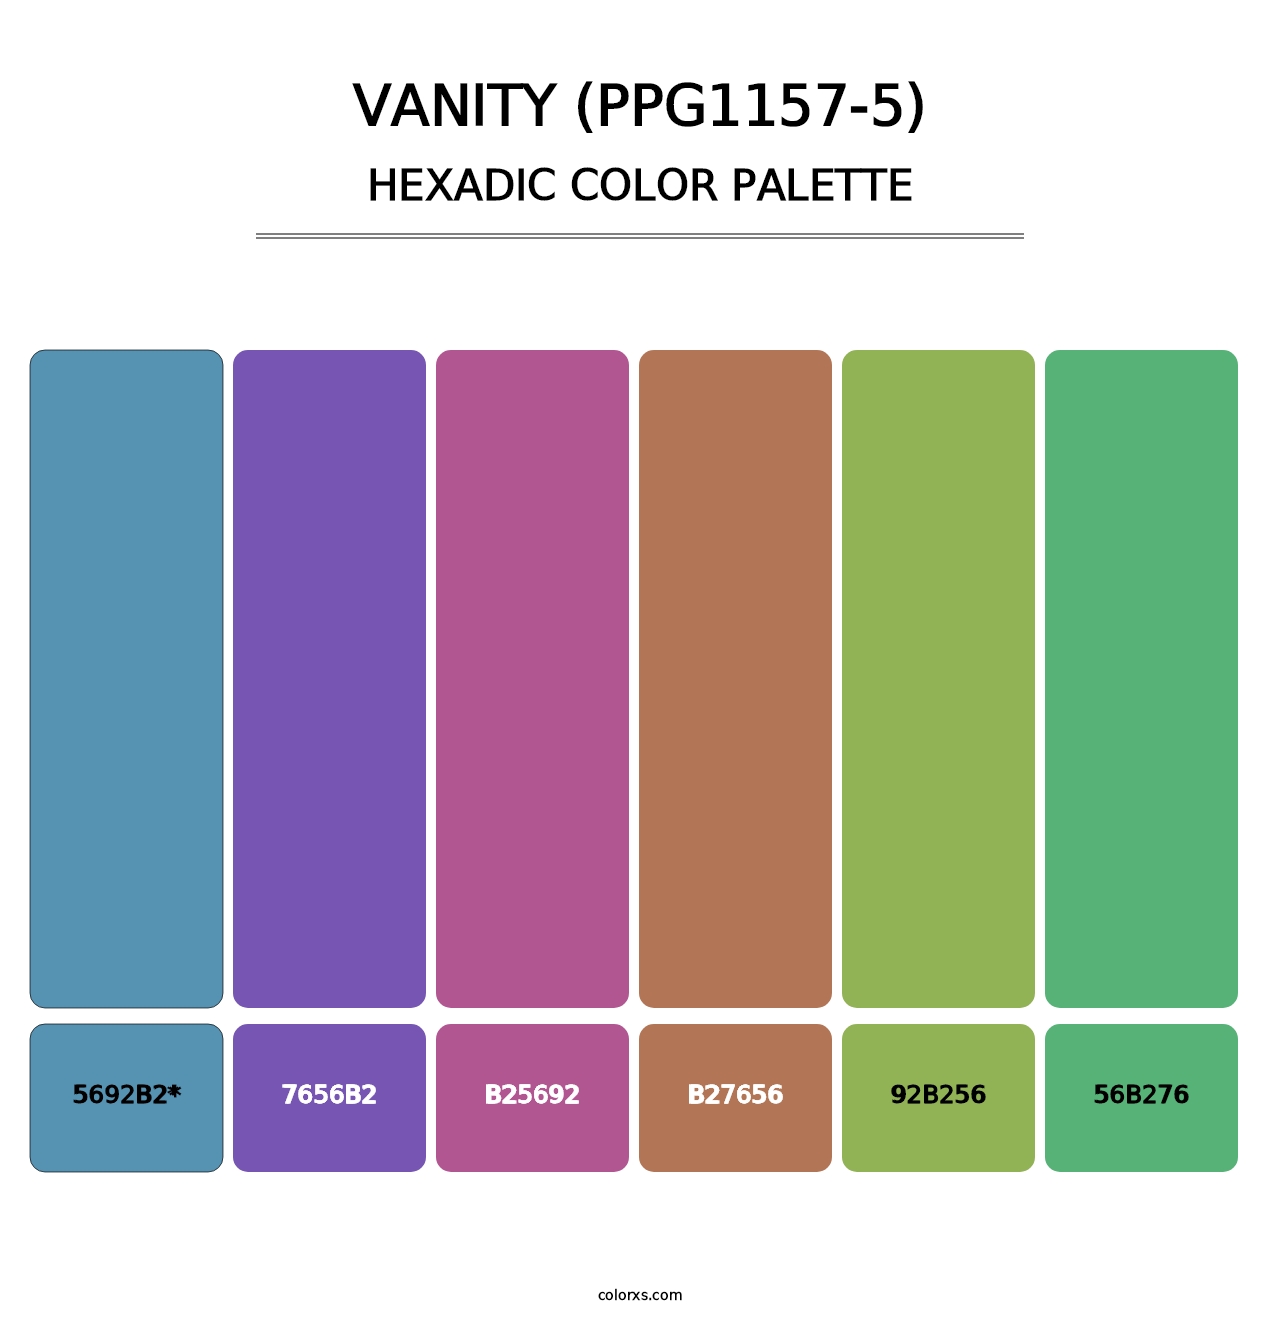 Vanity (PPG1157-5) - Hexadic Color Palette